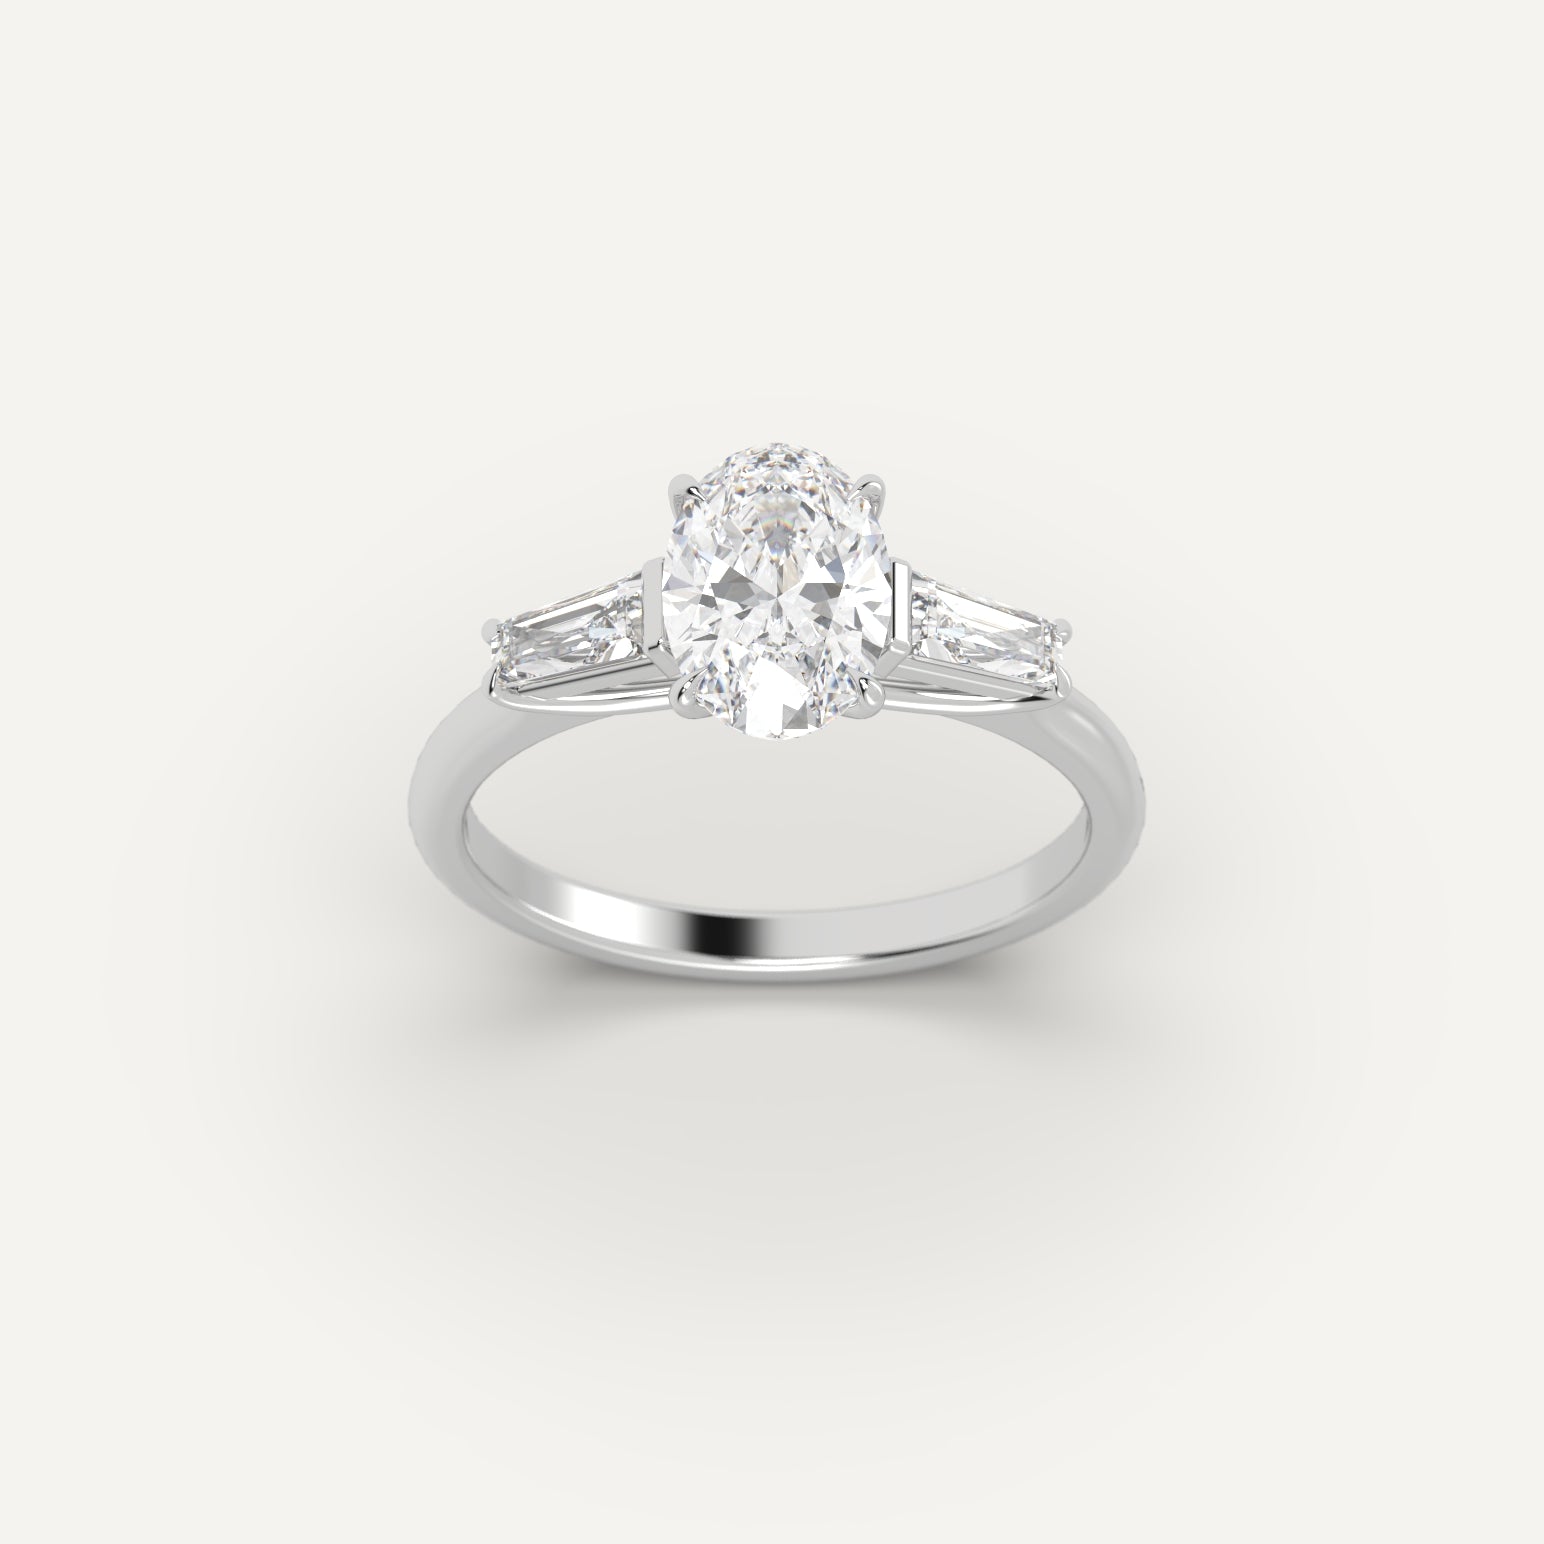 White Gold 1.4 Carat Engagement Ring